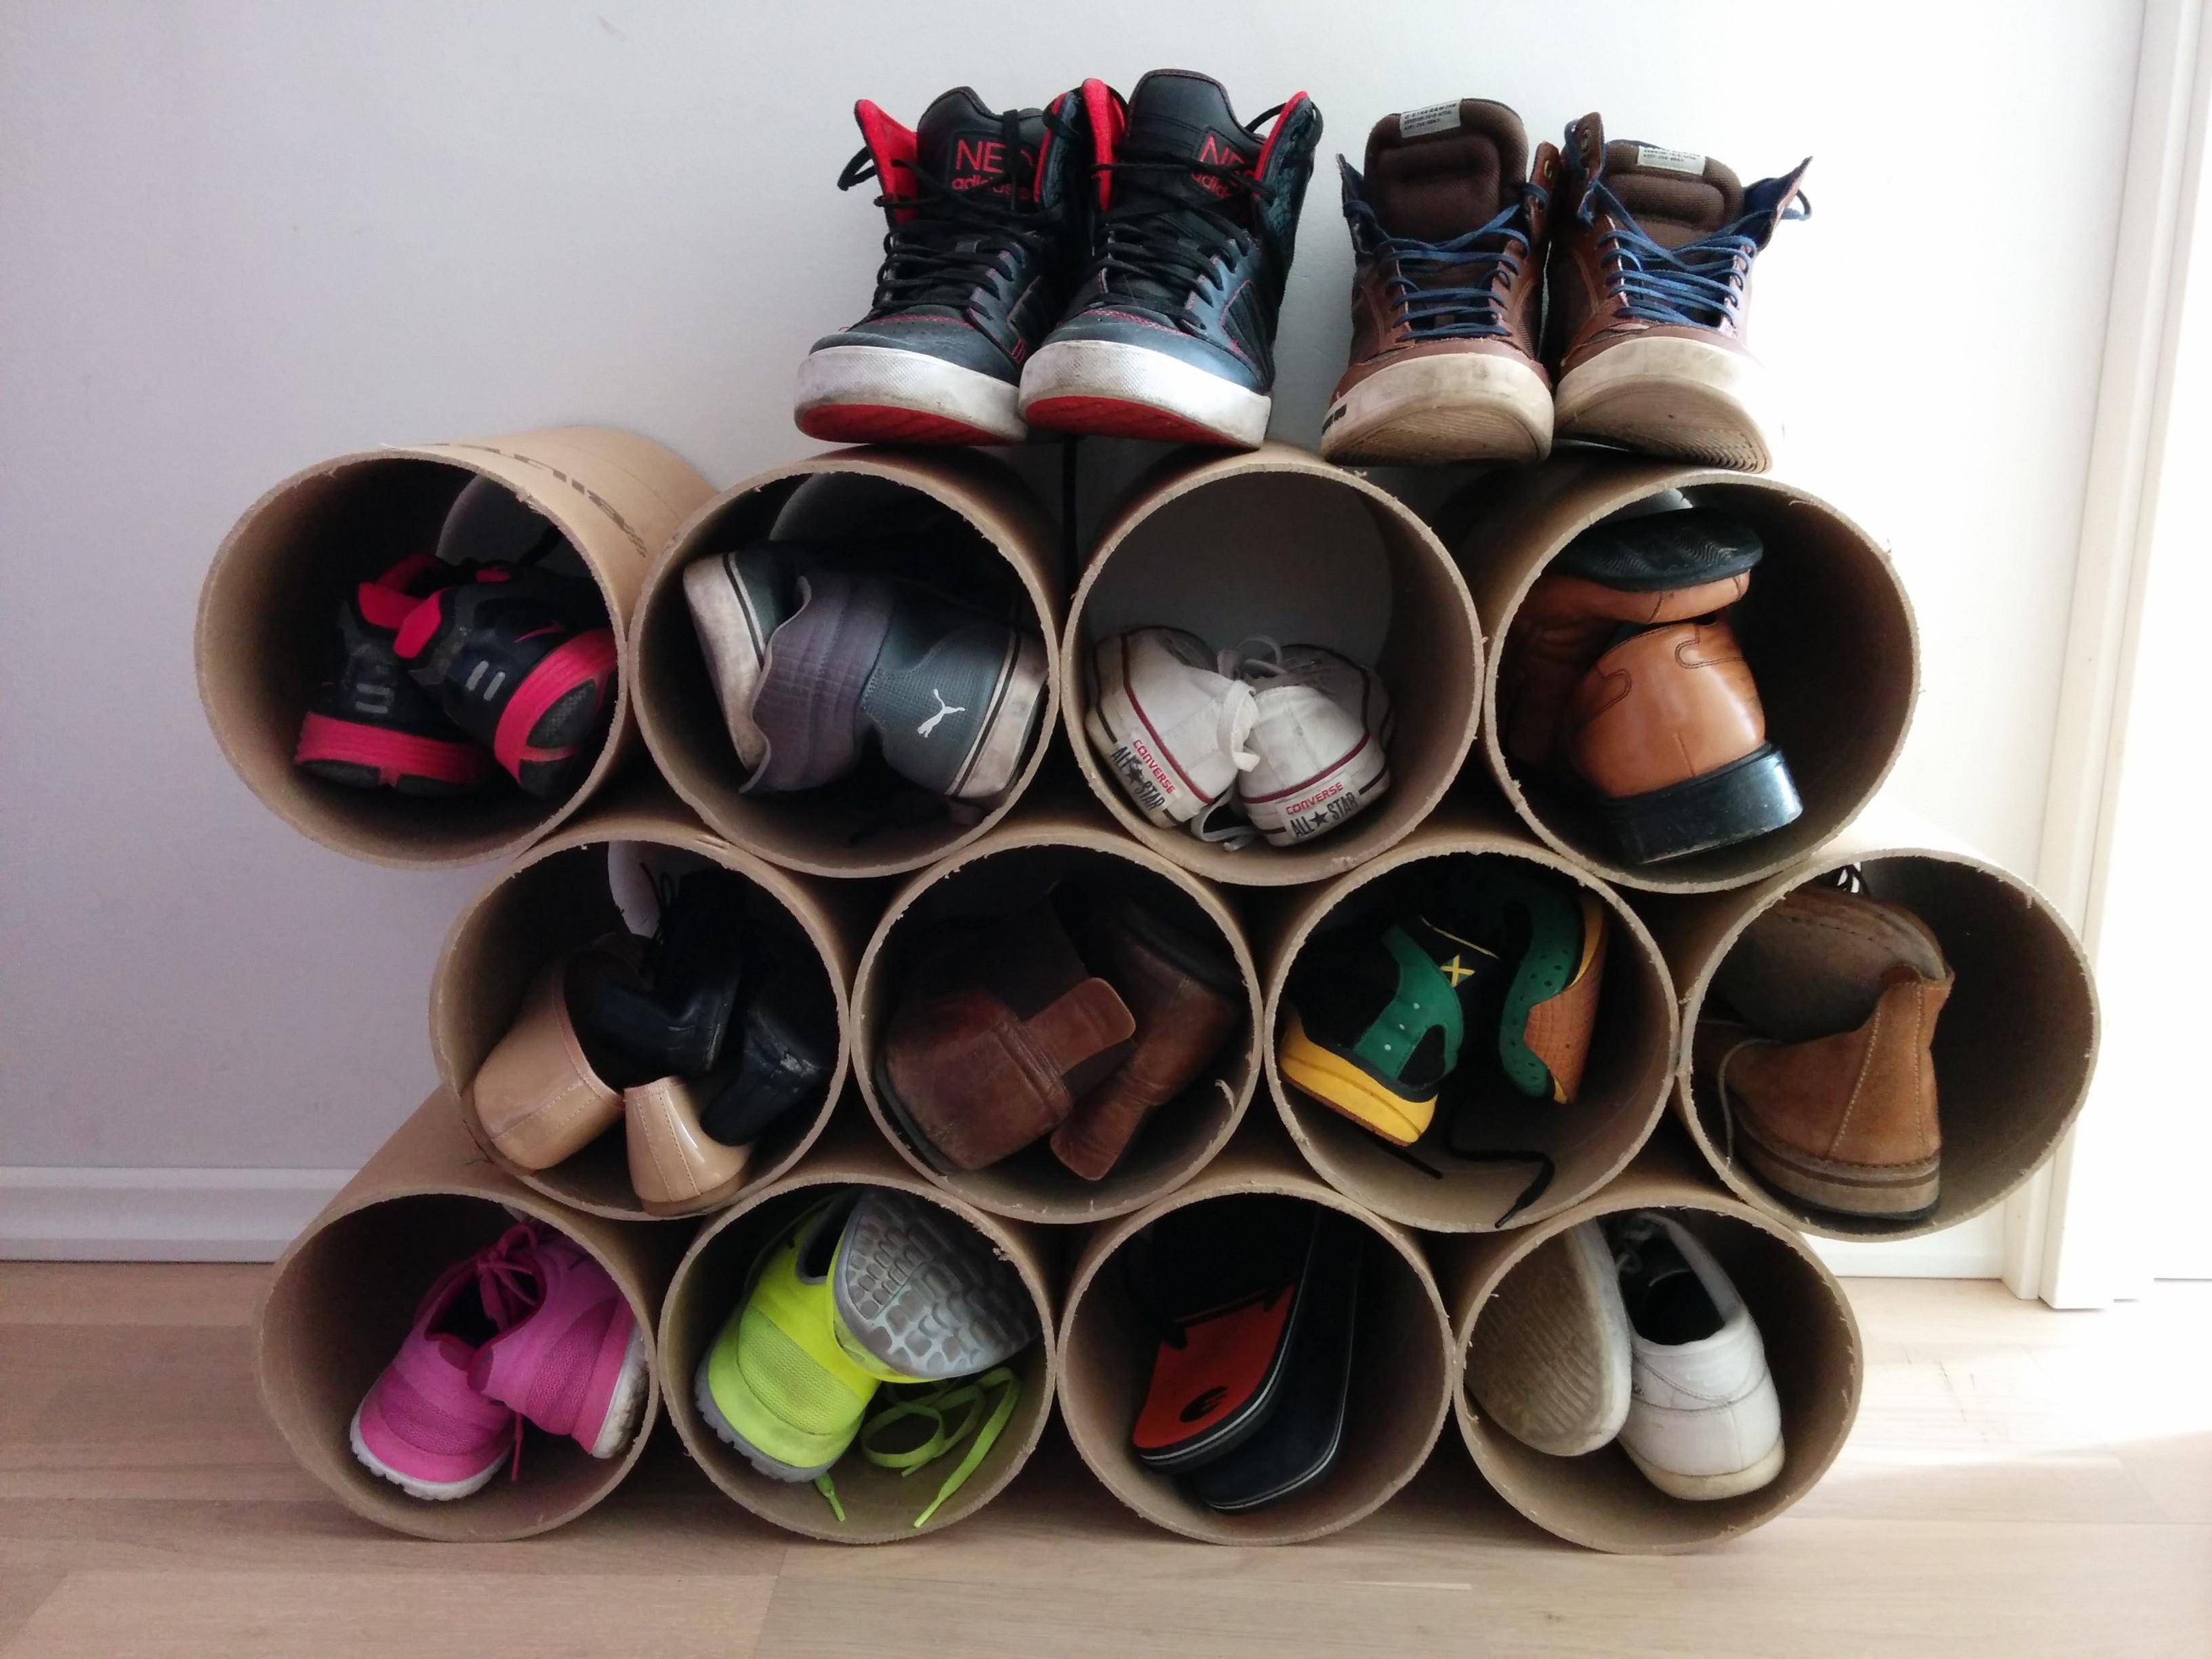 Обувница: для содержания обуви повседневной, сушки и длительного хранения обуви